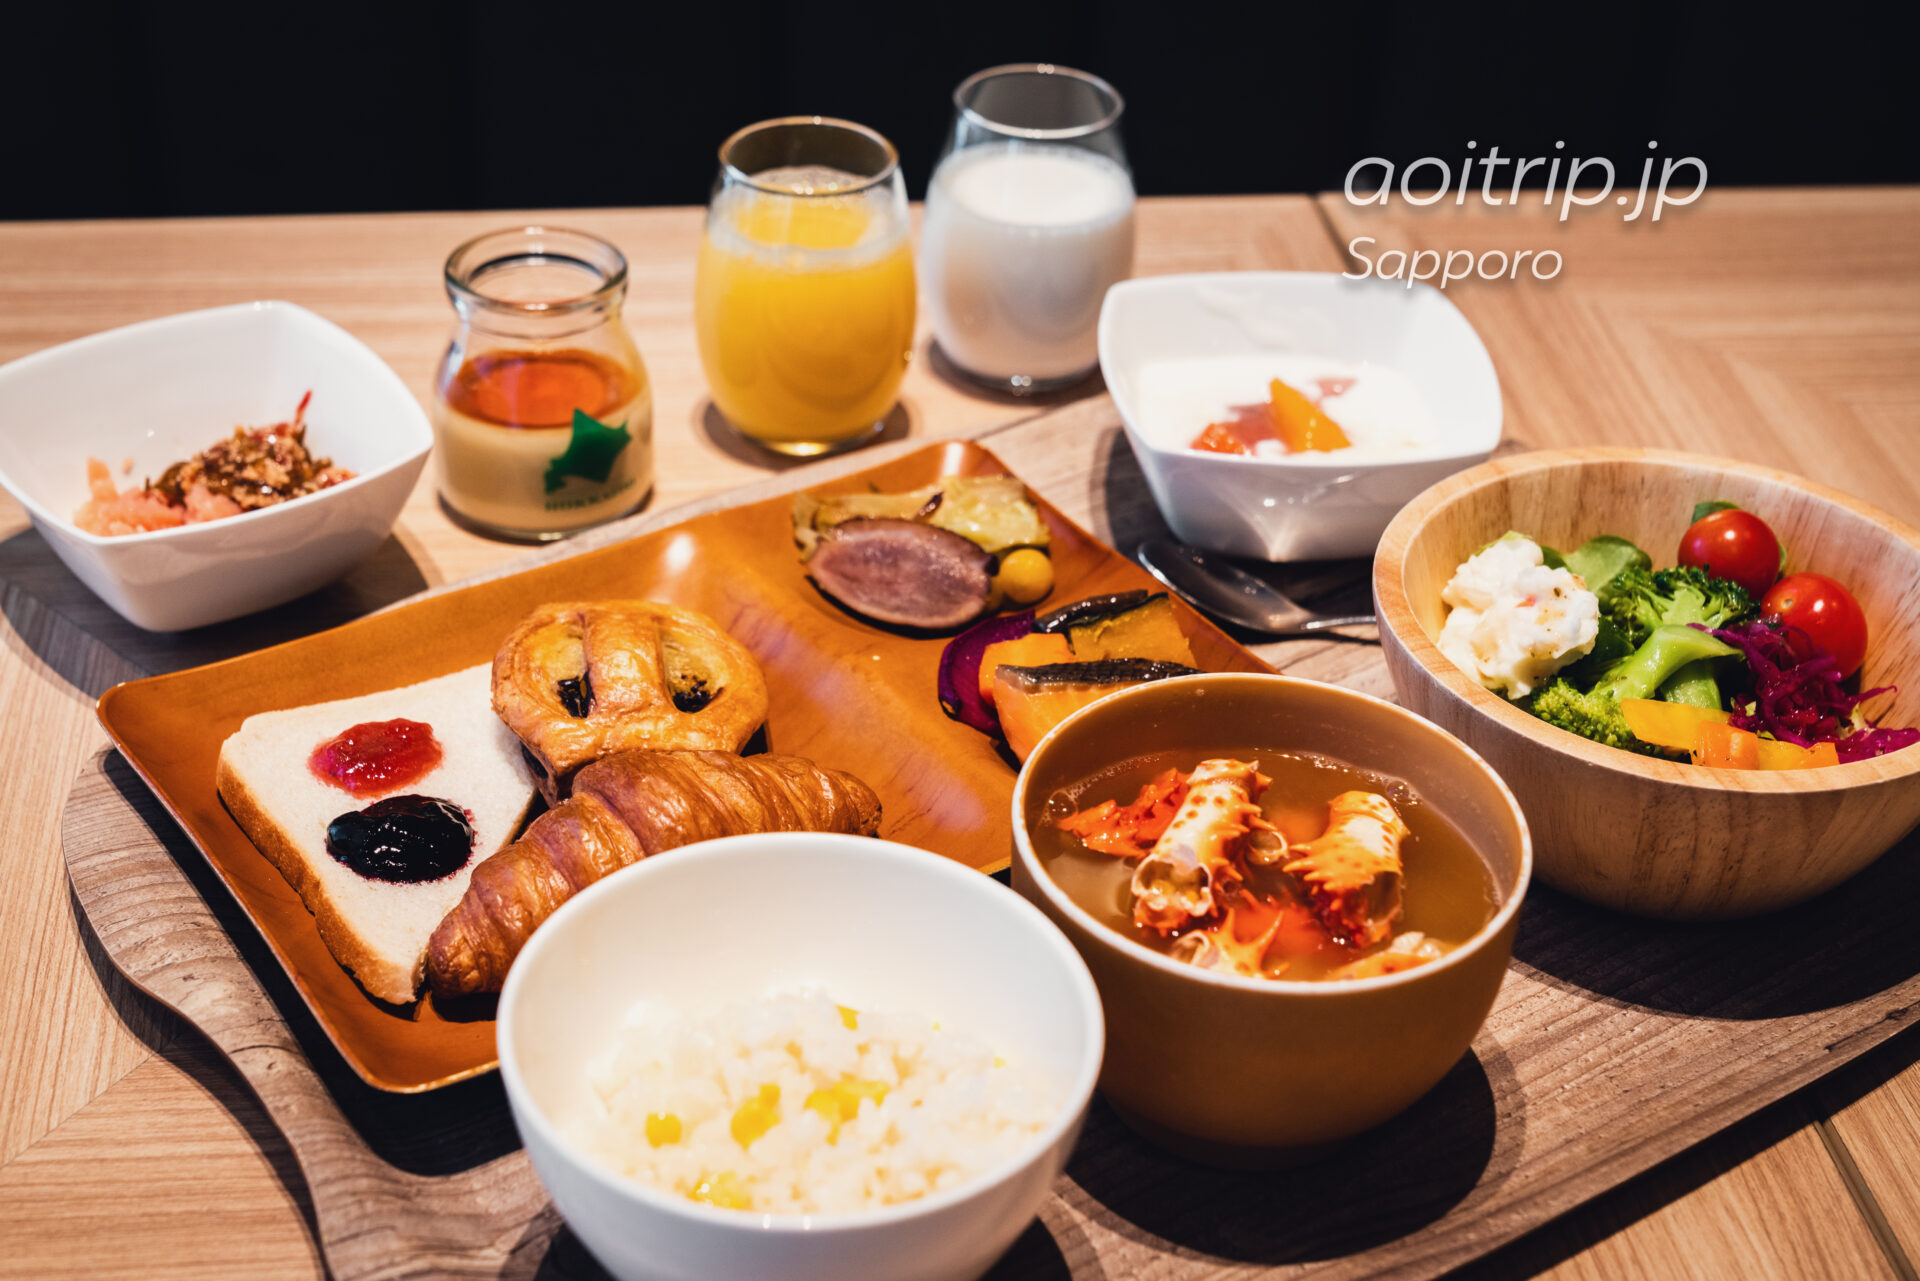 京王プレリアホテル札幌の朝食